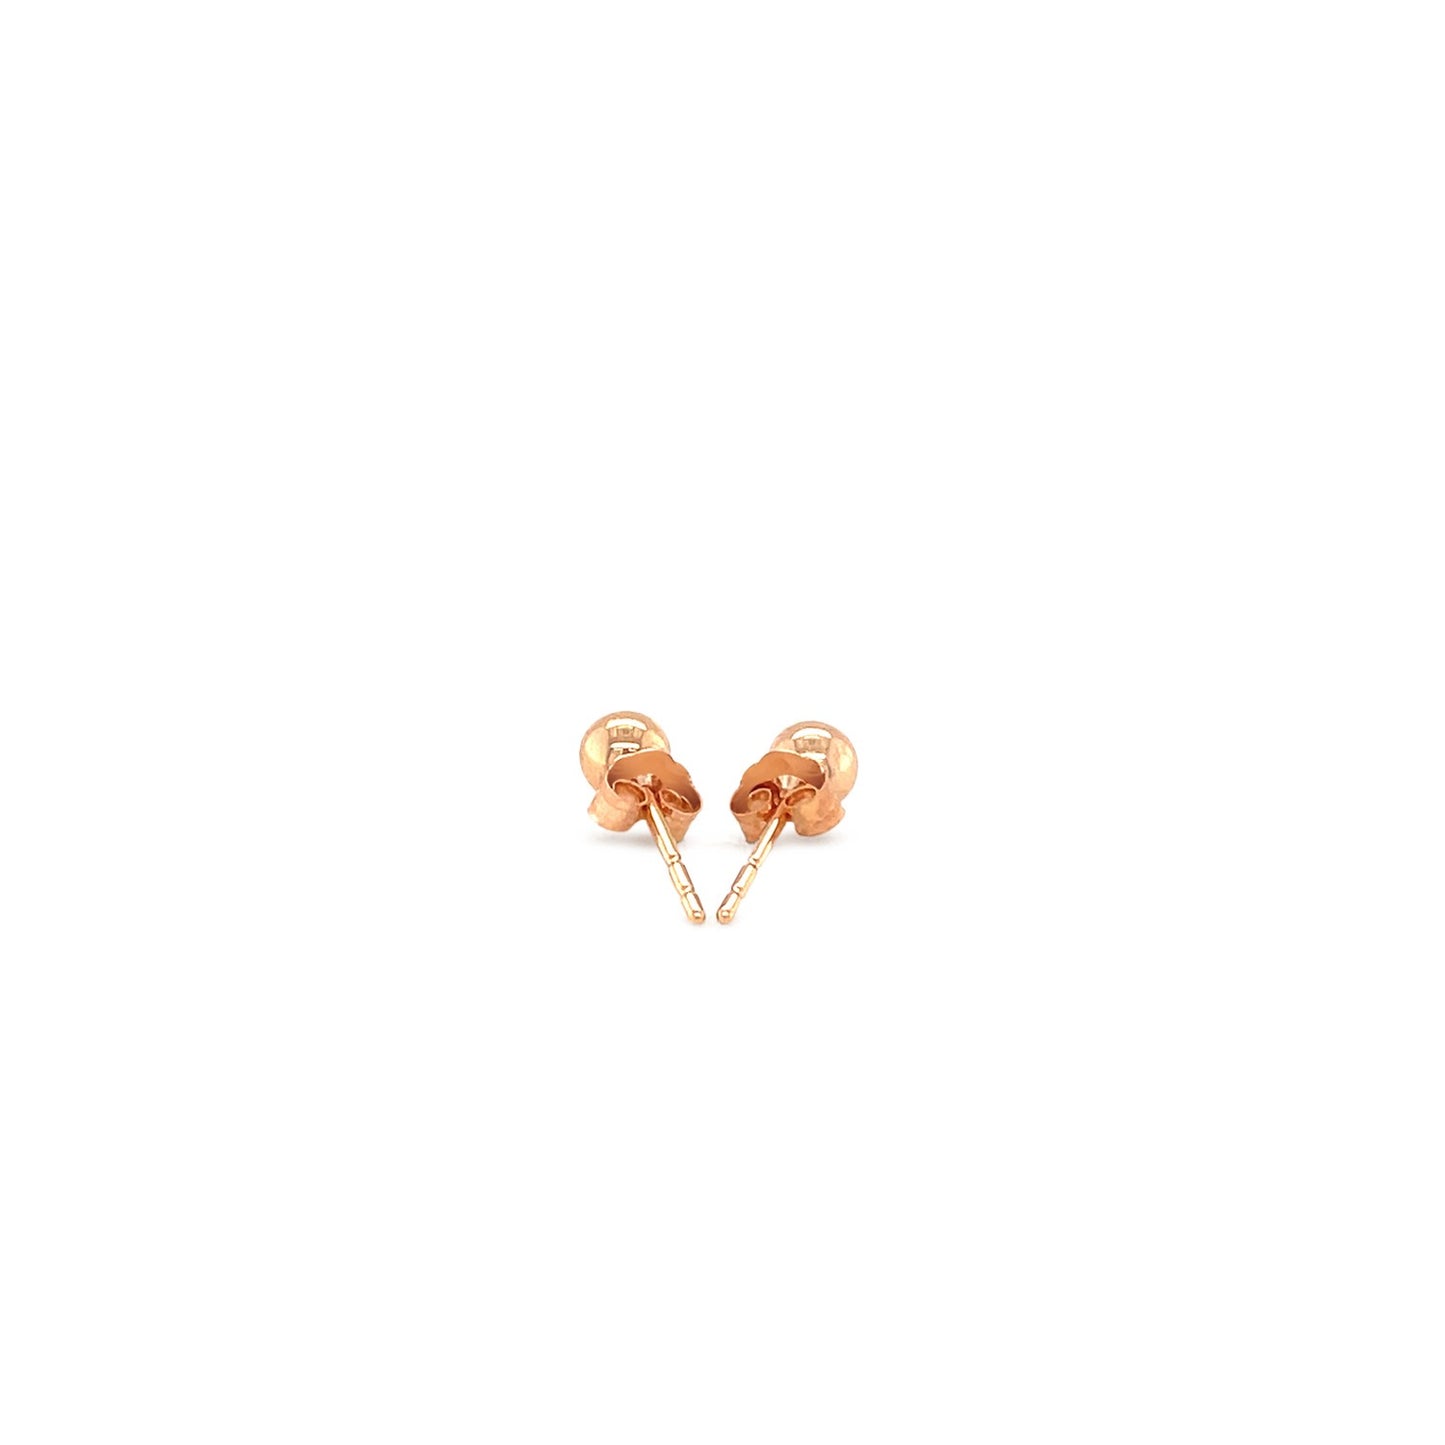 14k Rose Gold Ball Style Stud Earrings (4.0 mm)